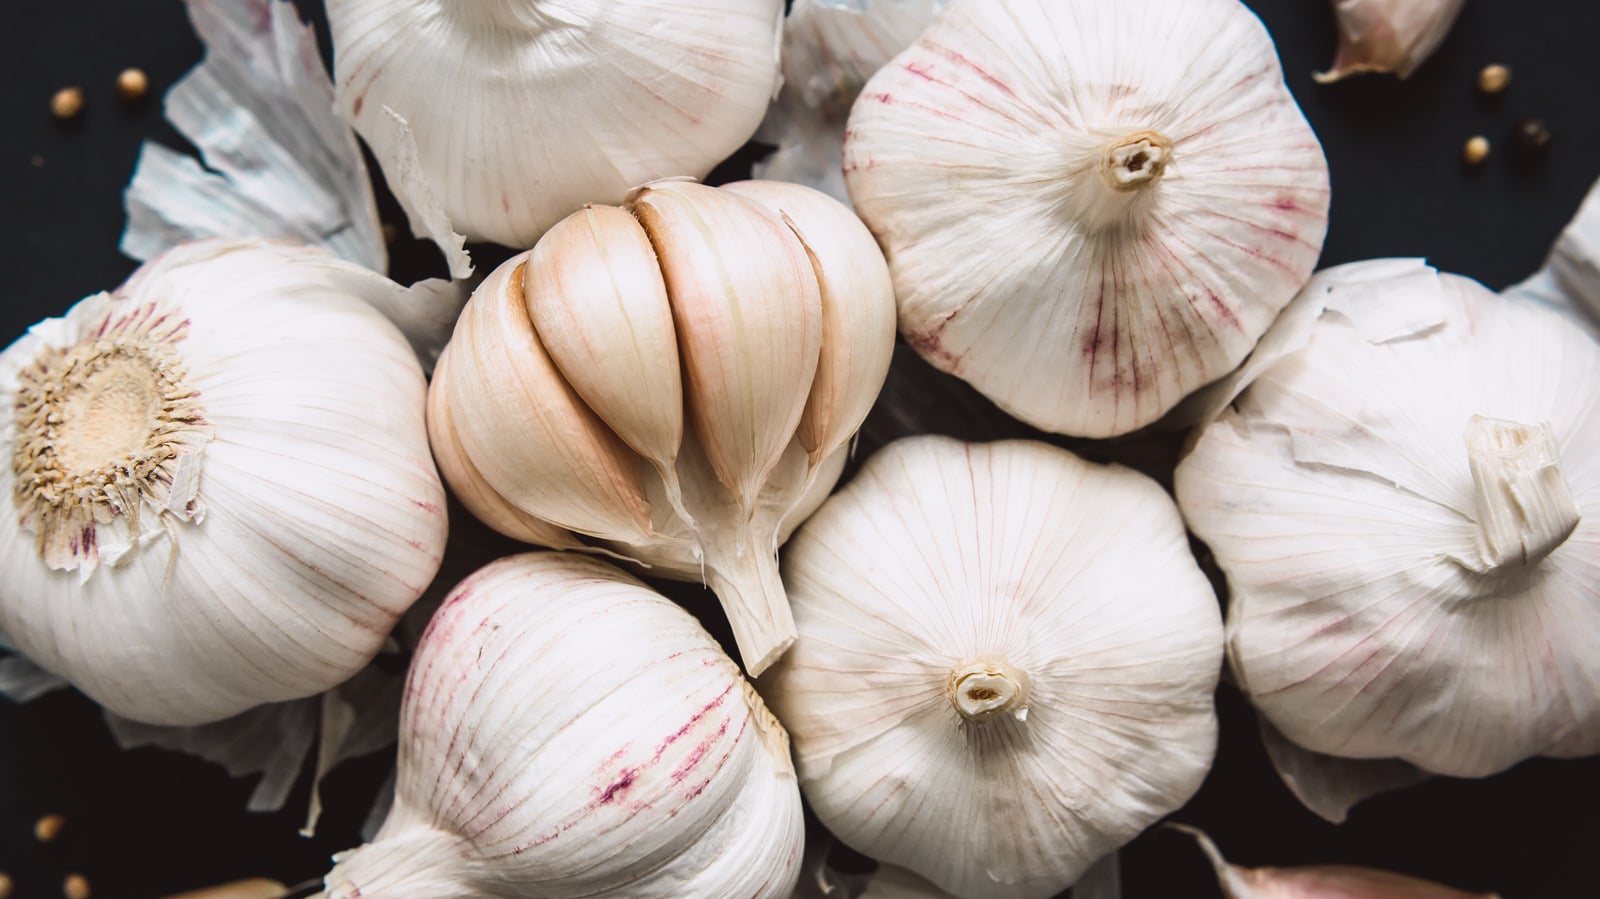 Can Garlic Go Bad